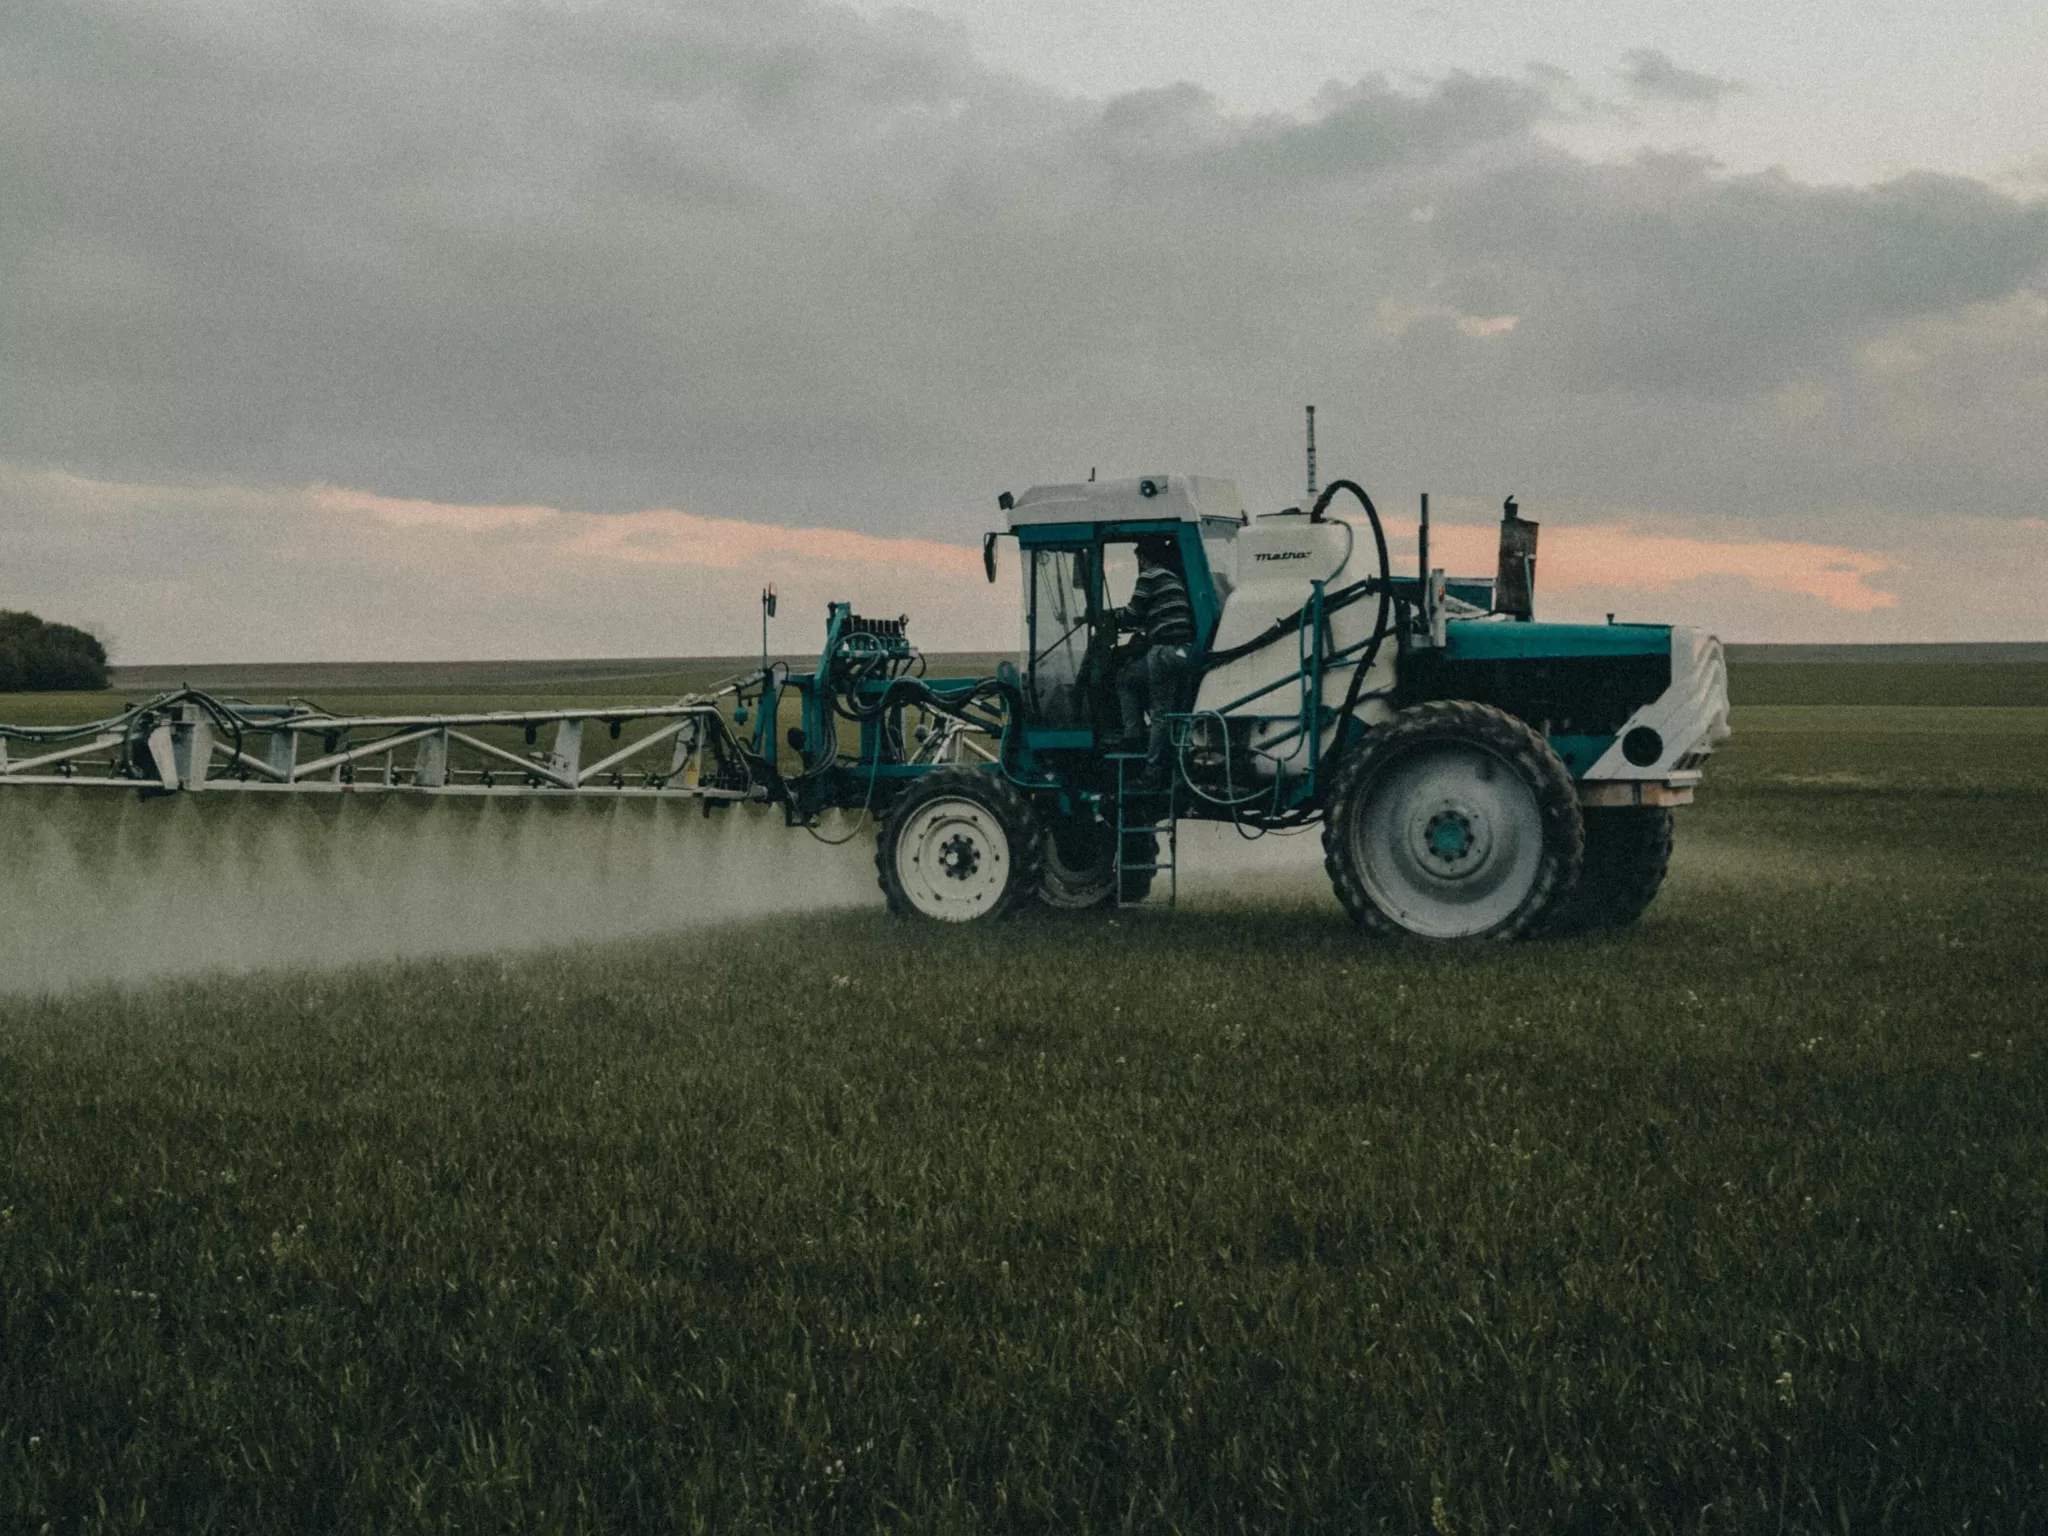 L'usage du nombre de doses de pesticides a augmenté de 13% entre 2019 et 2020.